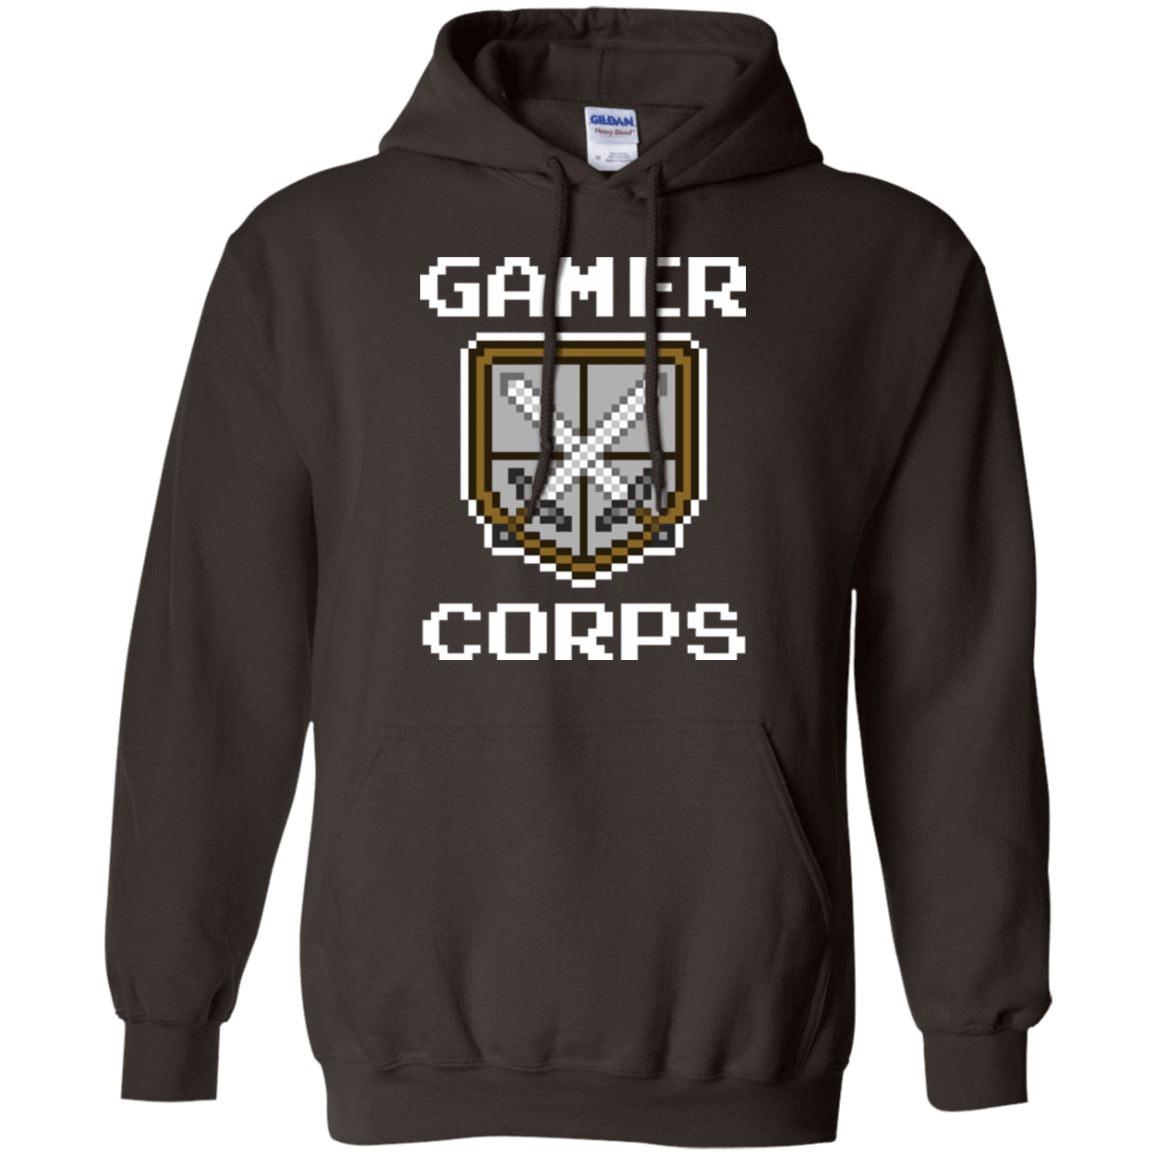 Sweatshirts Dark Chocolate / Small Gamer corps Pullover Hoodie